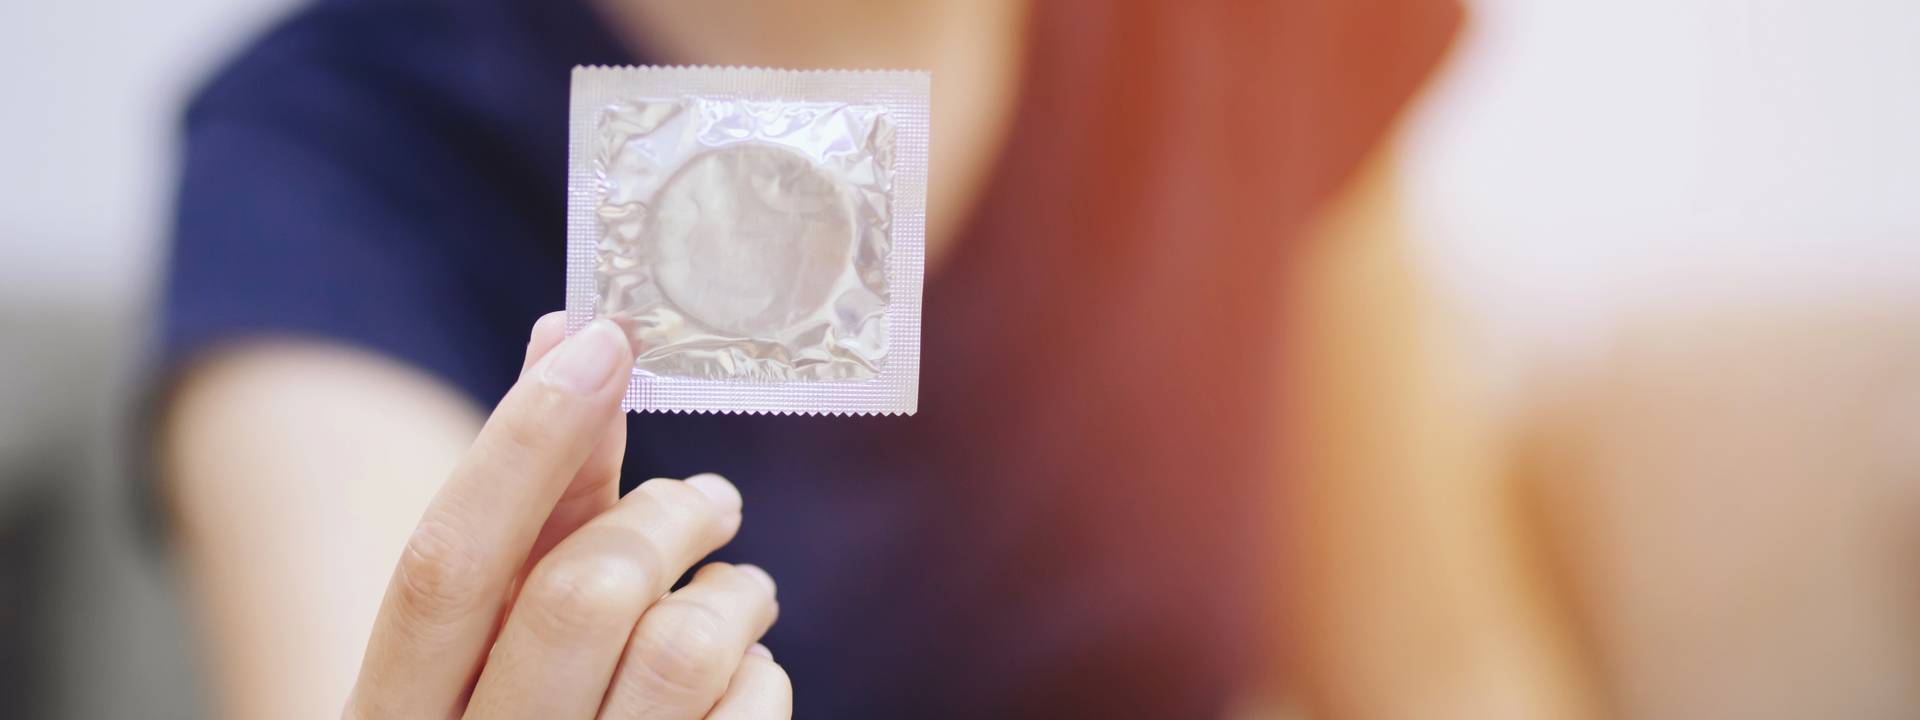 Pregnant Using Condoms